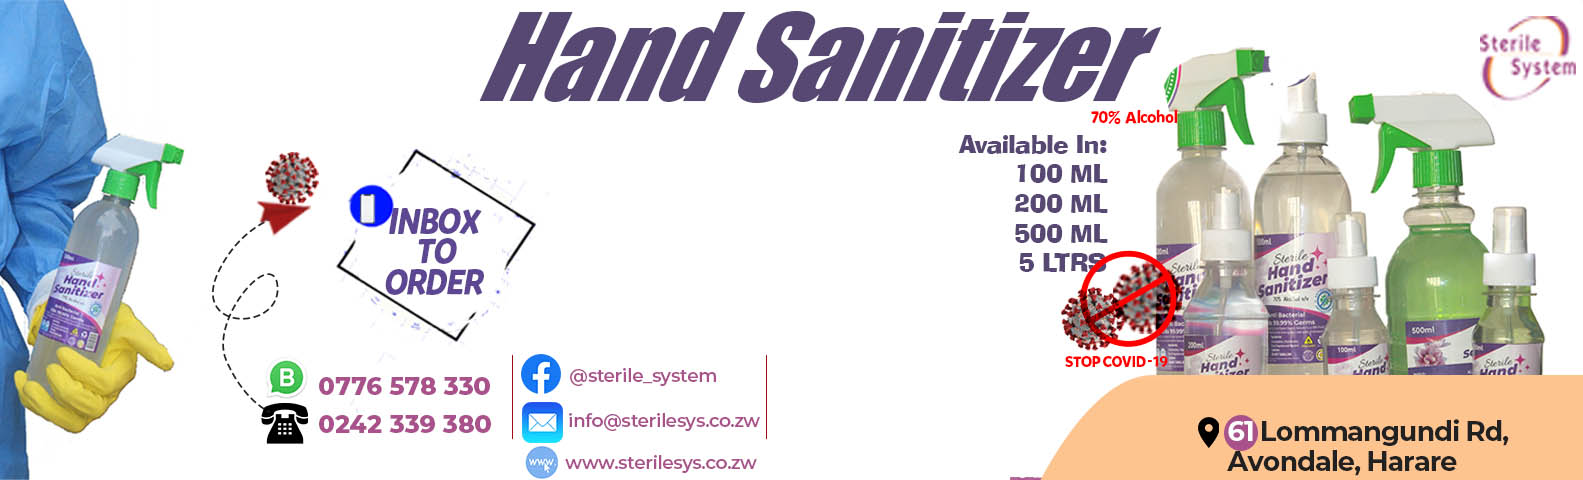 Hand Sanitizer Slide